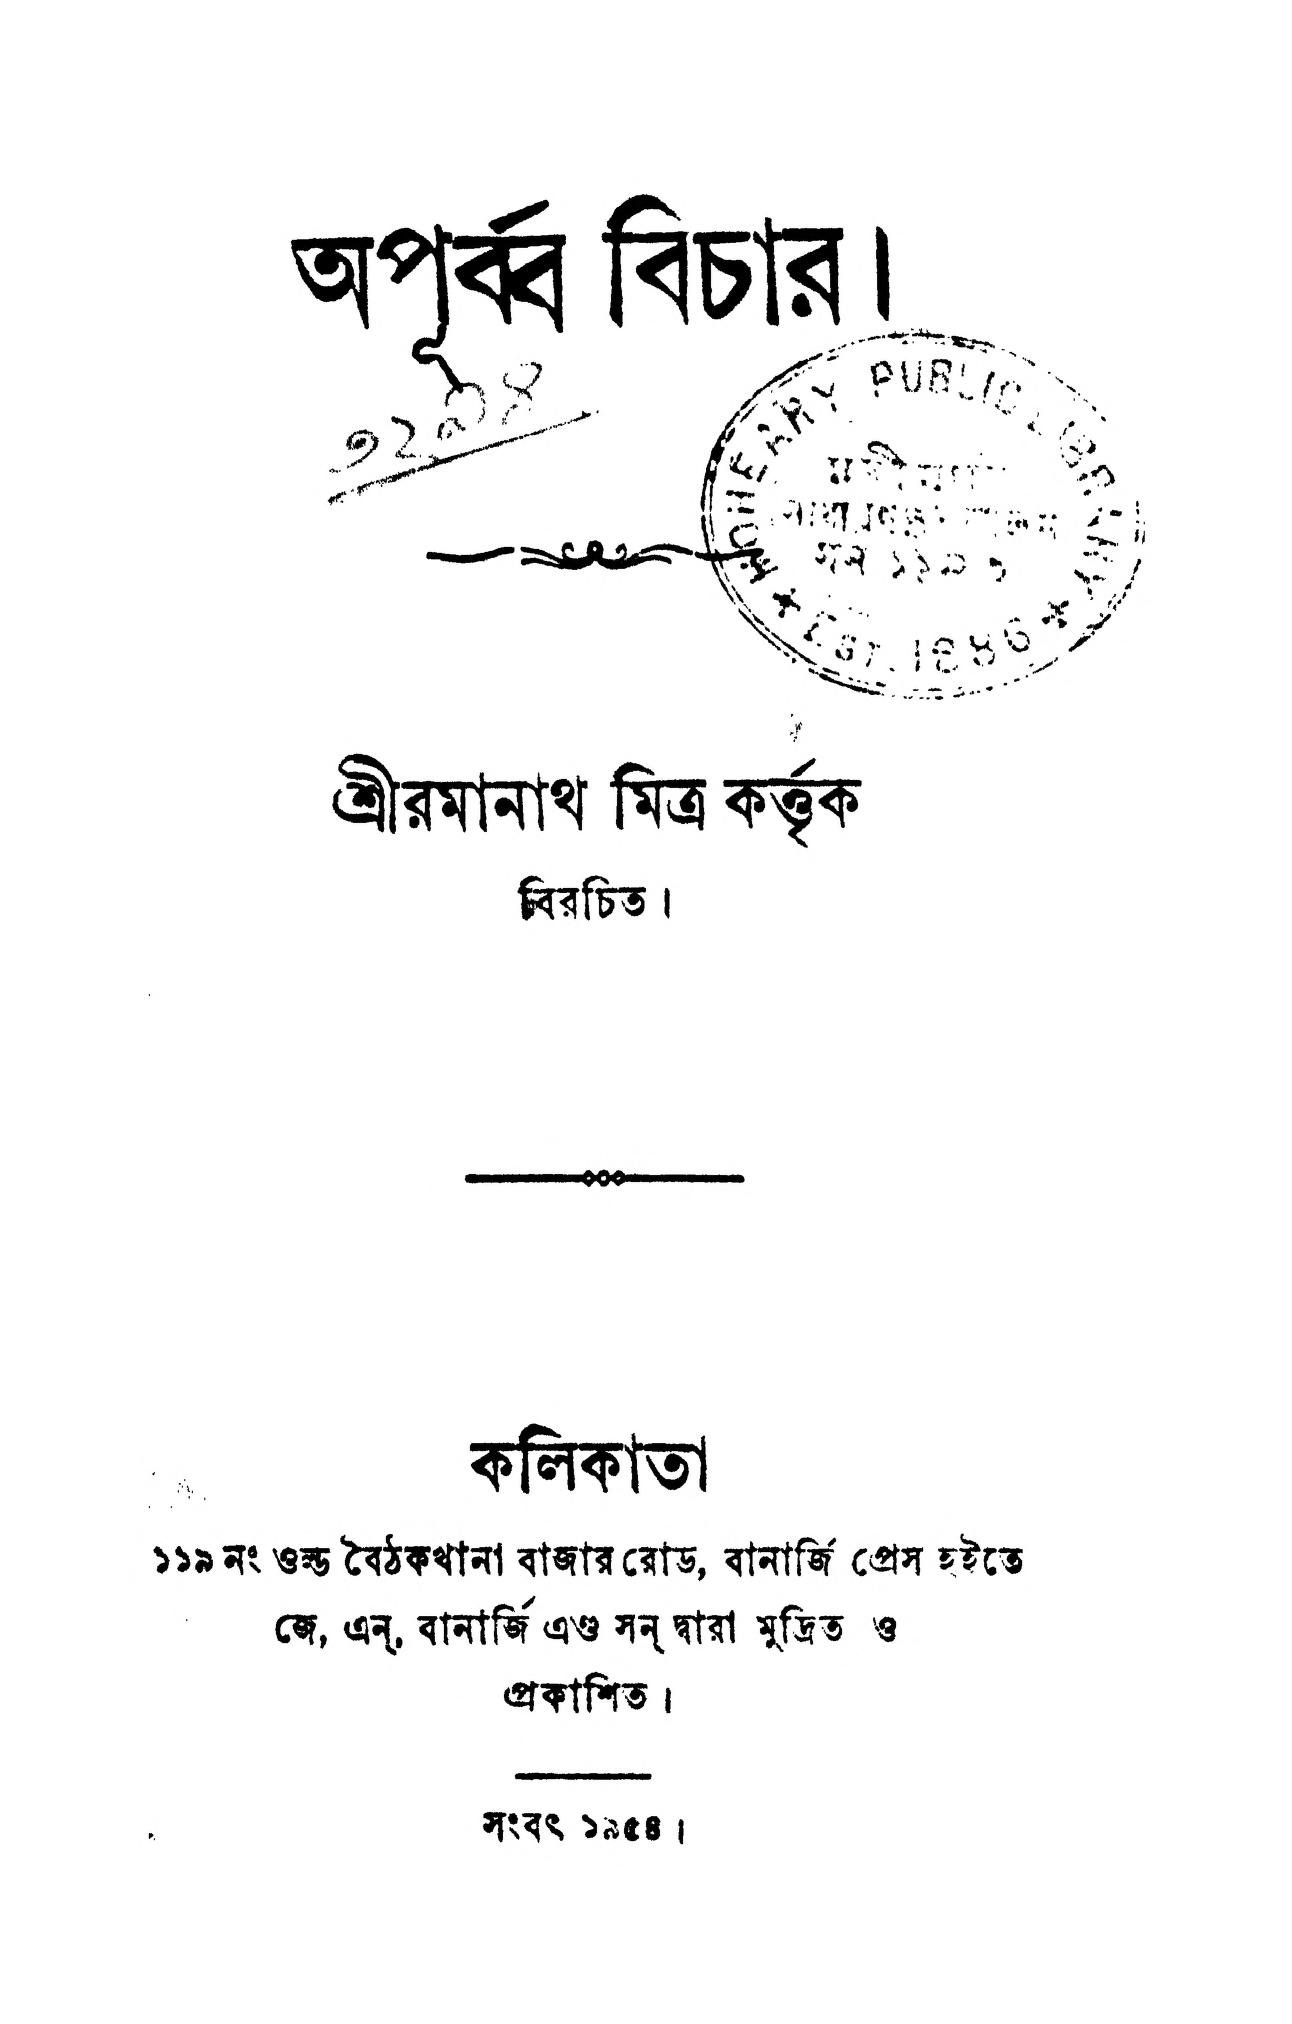 kushti bichar book in bengali